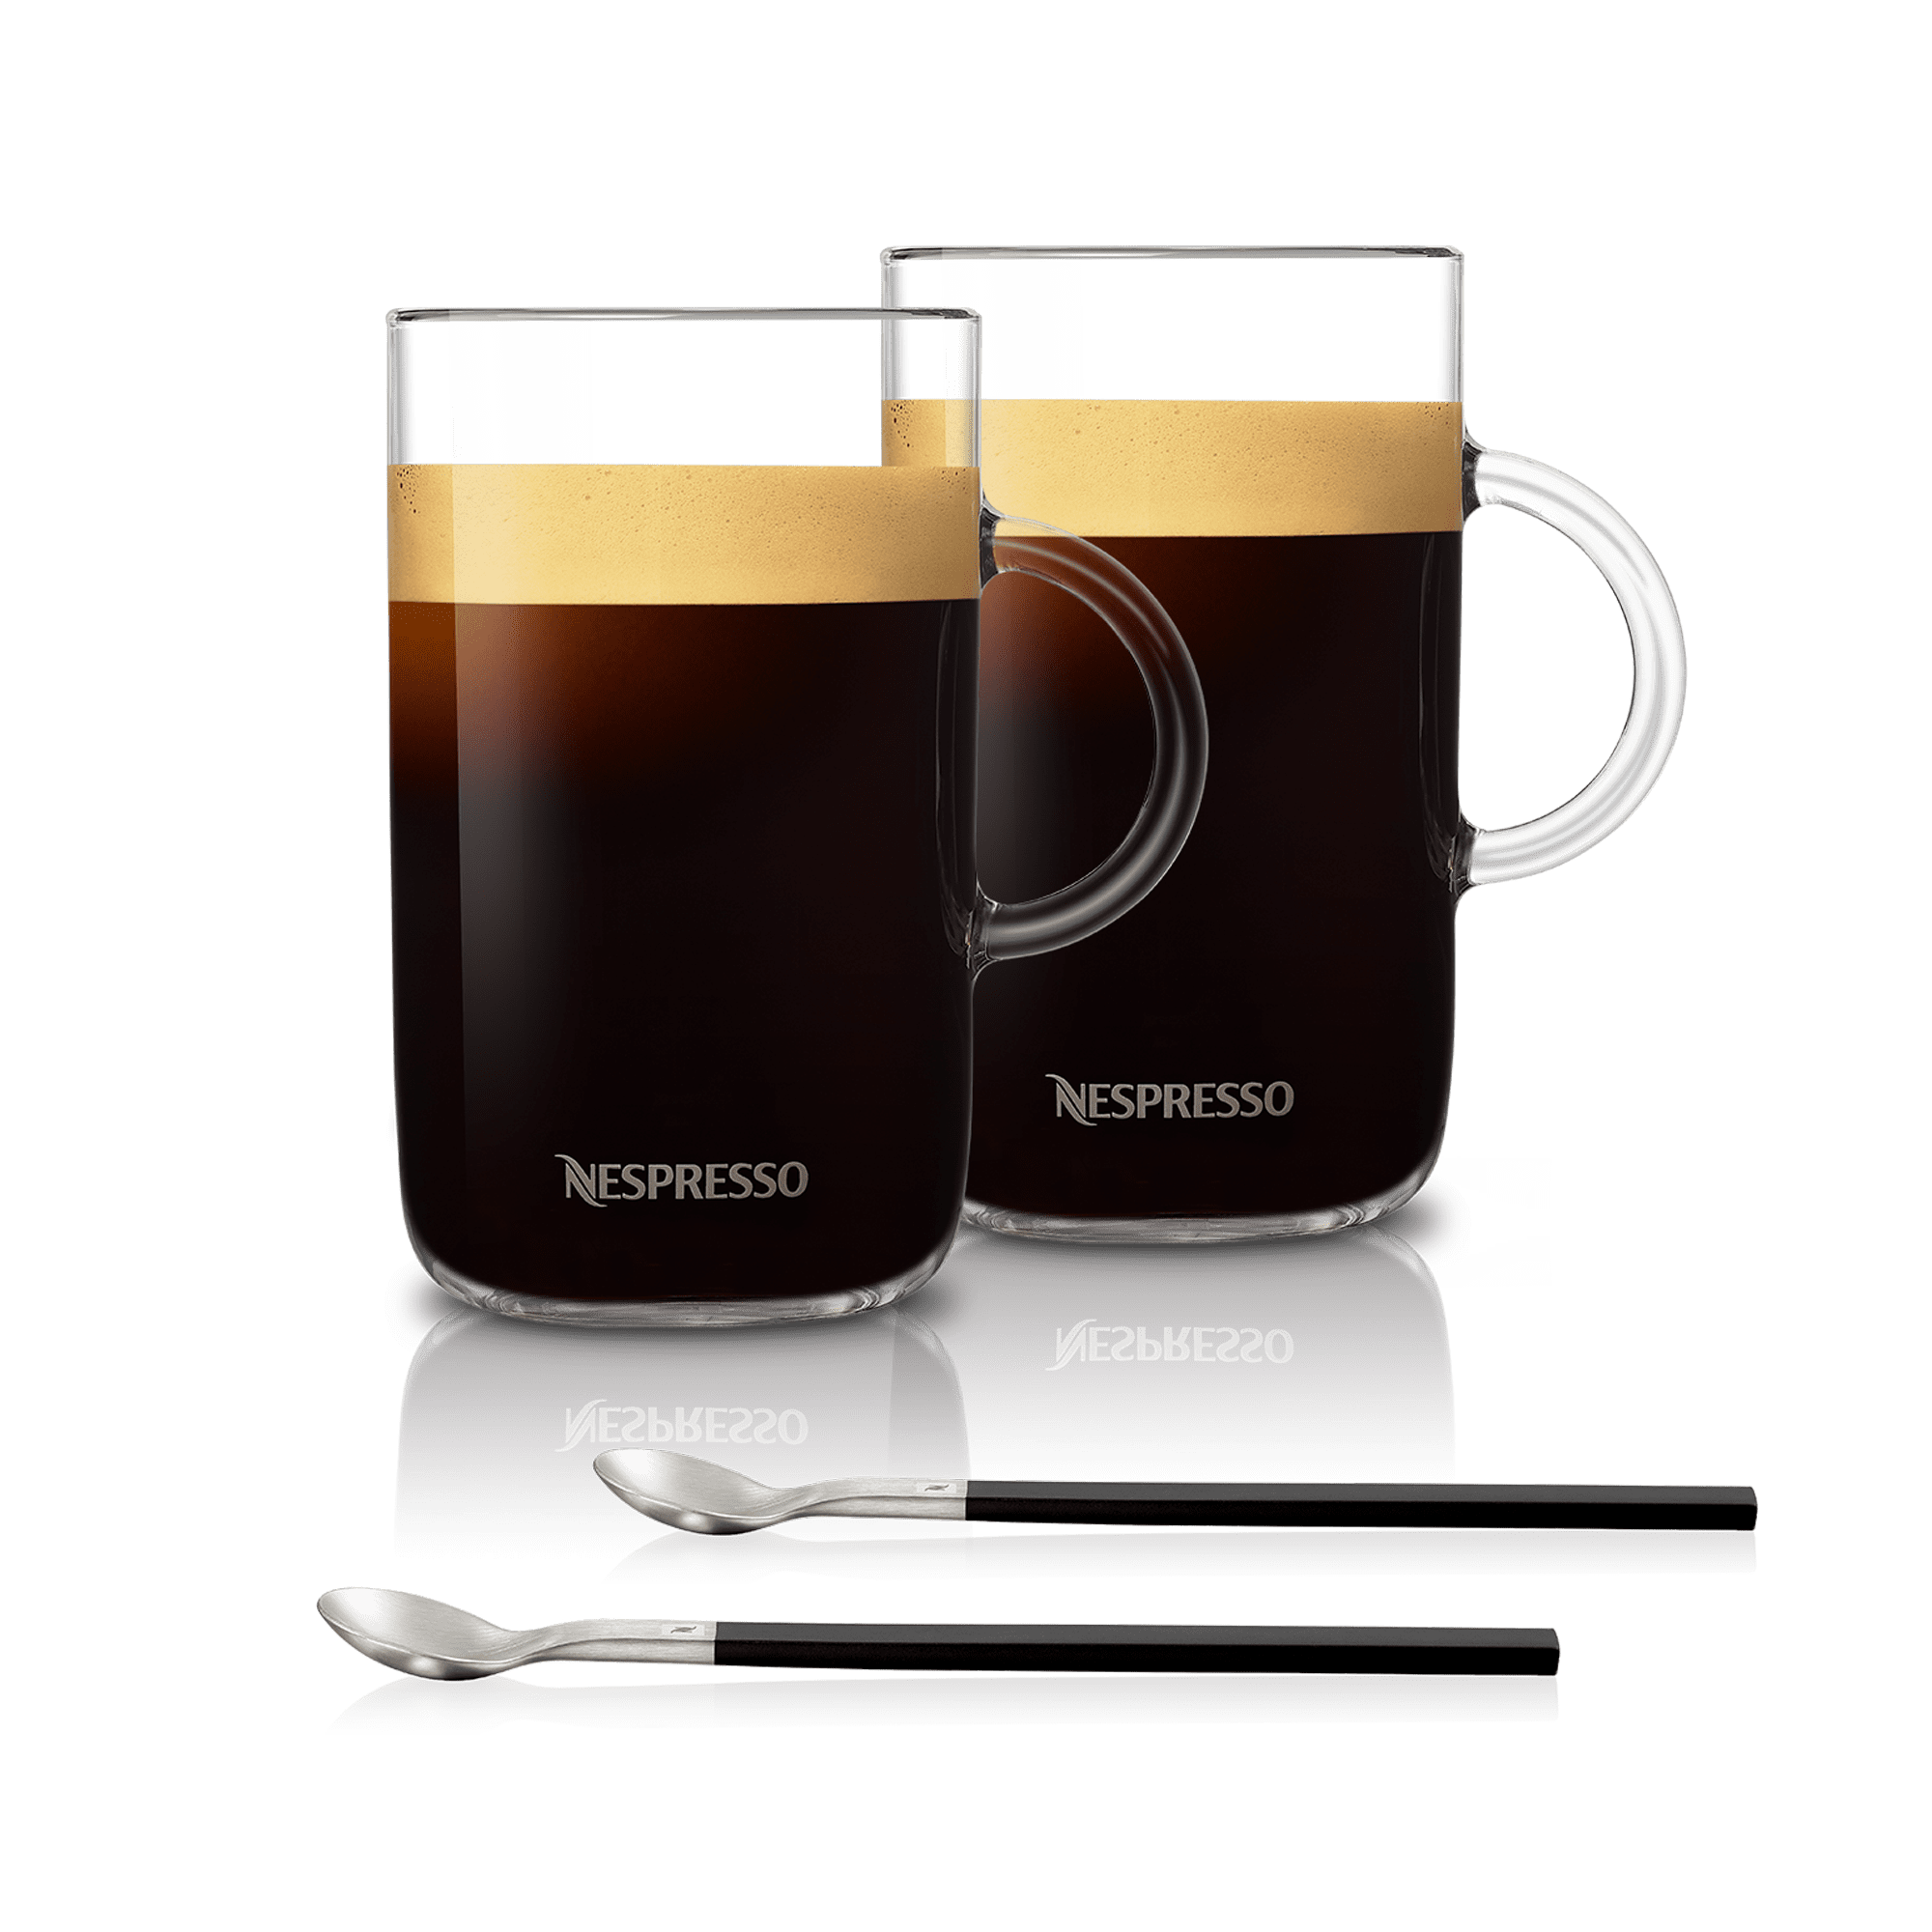 Nespresso Vertuo Alto Mugs